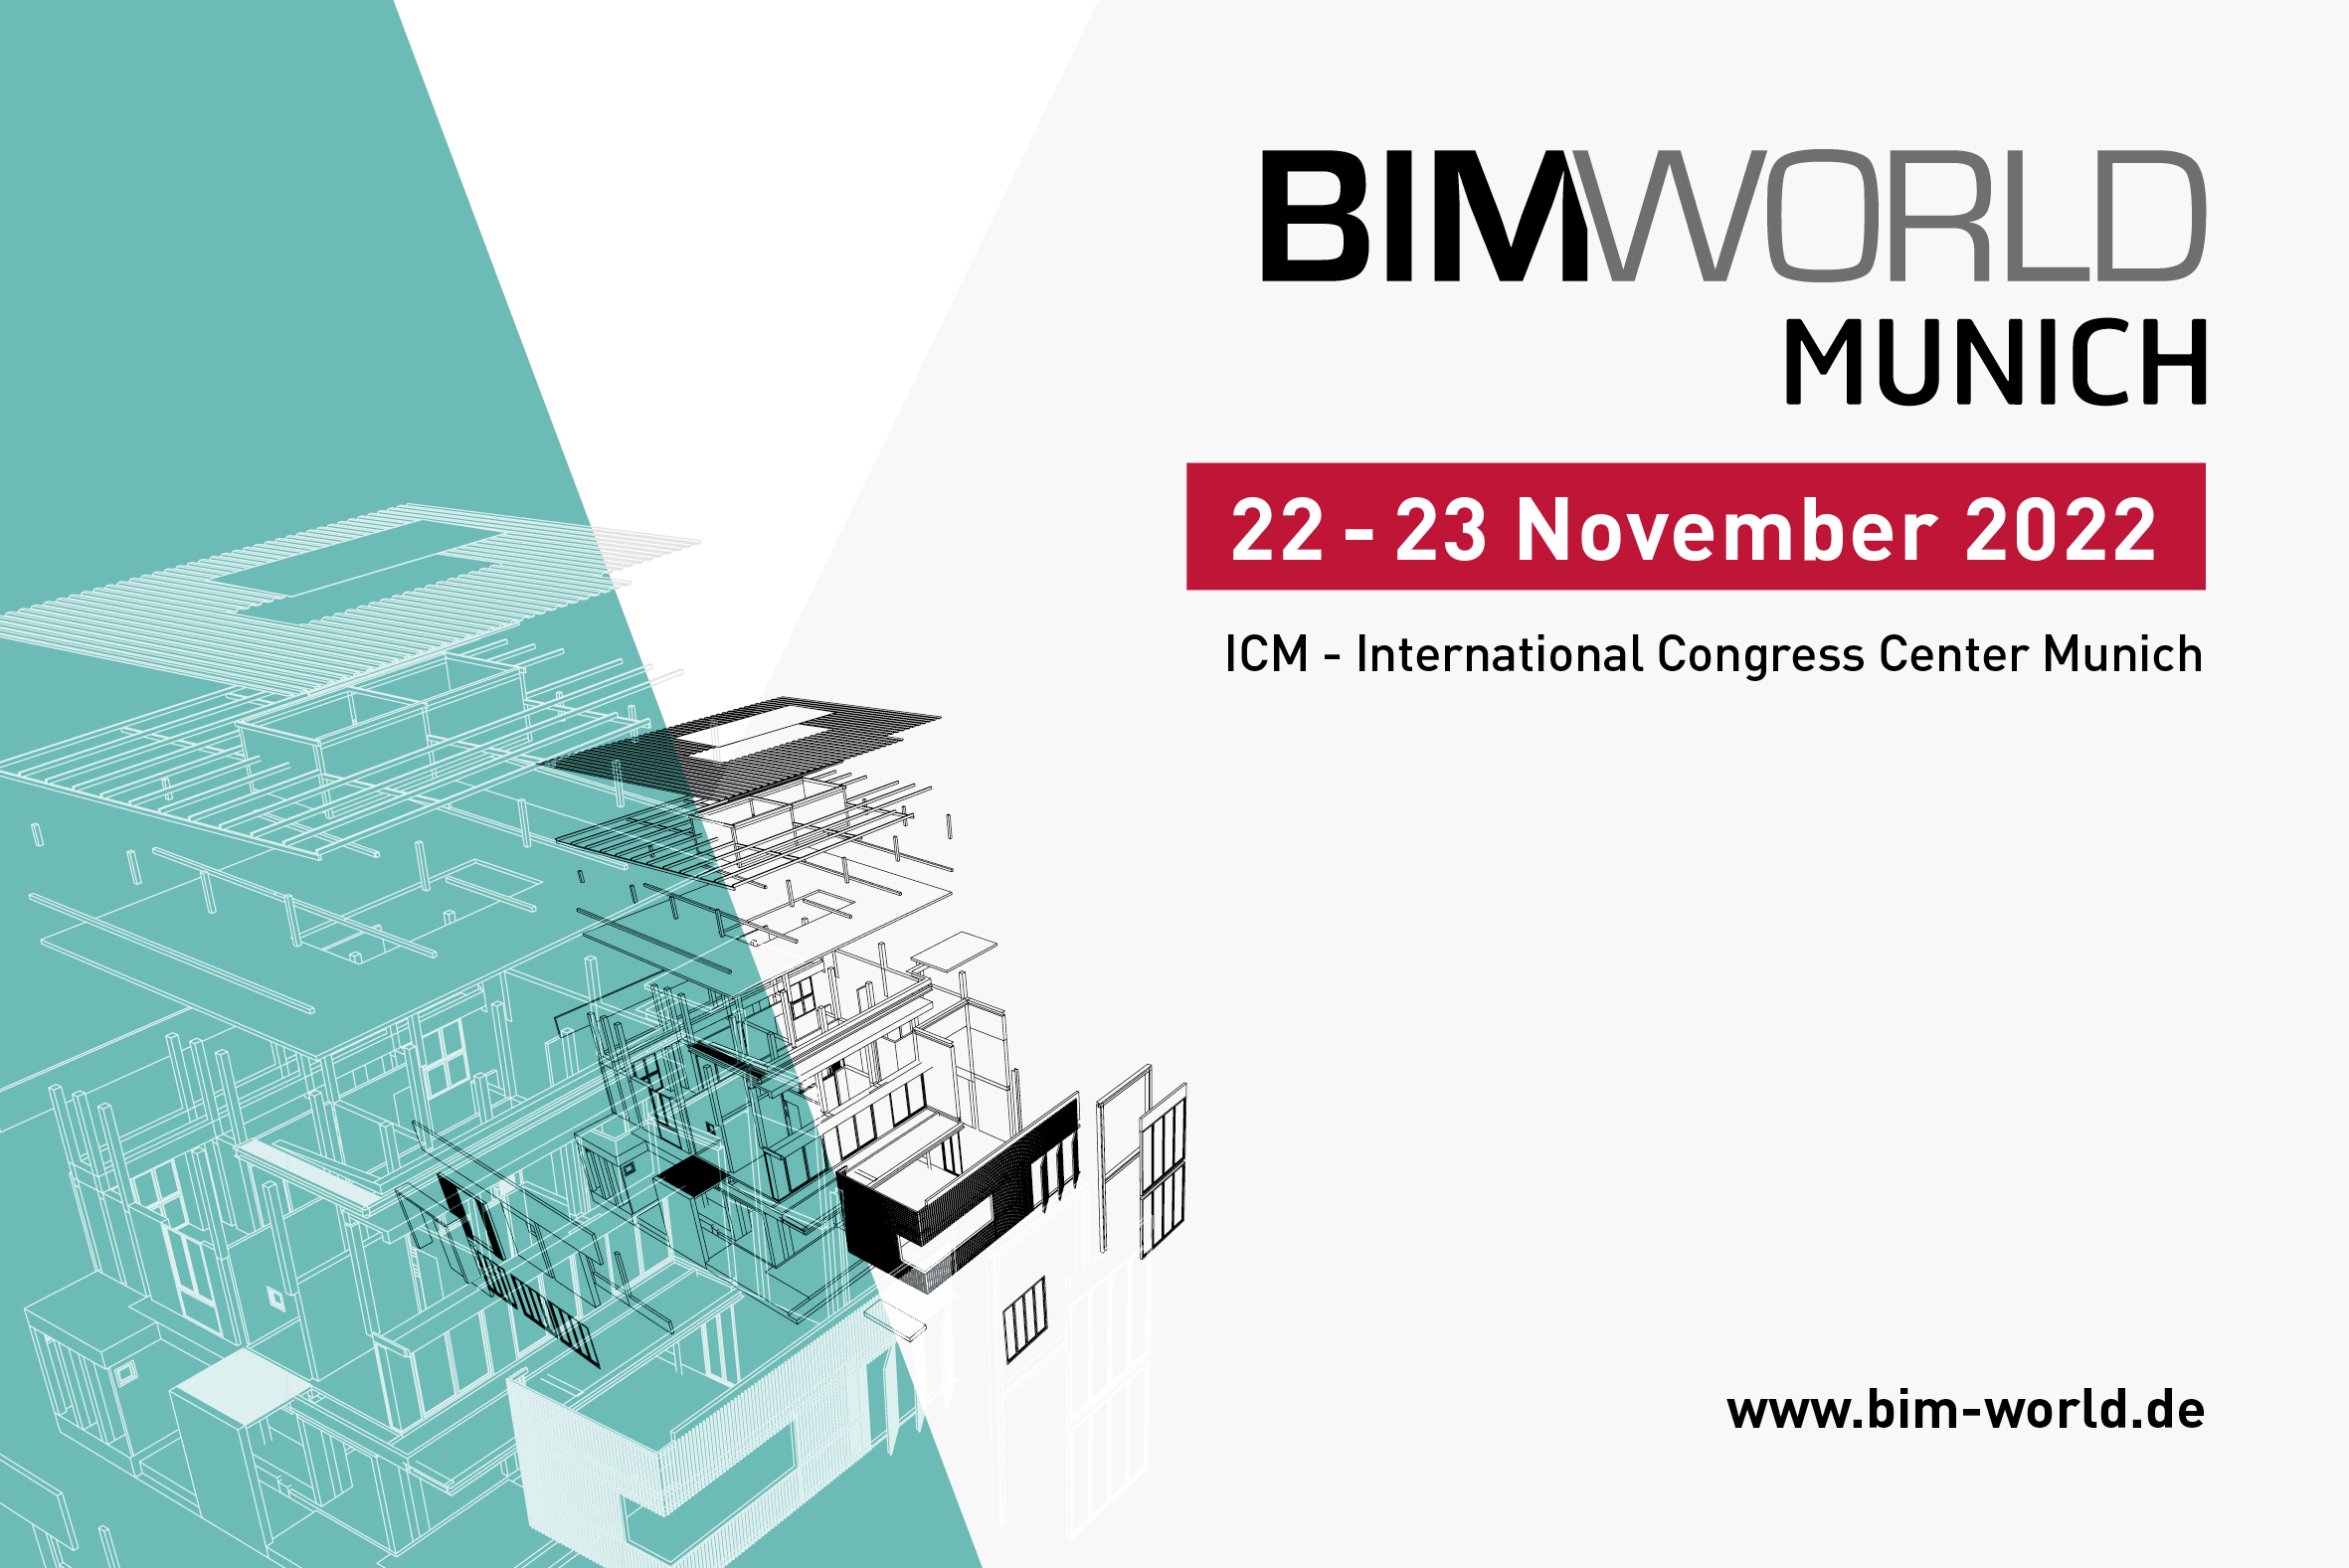 Exhibitor registration for BIM World MUNICH 2022 open! / Aussteller